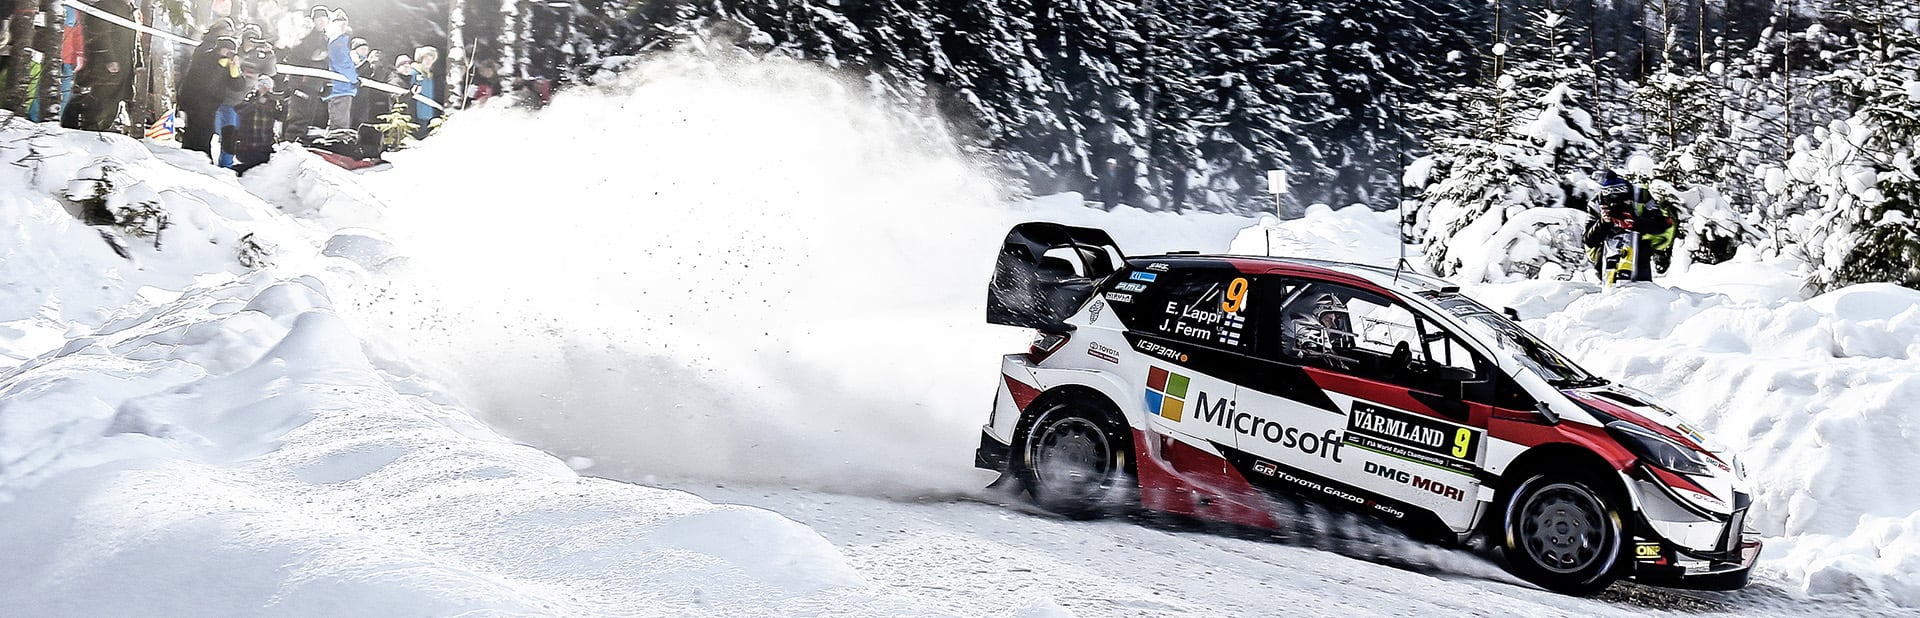 WRC 第2戦 ラリー・スウェーデン デイ4 ラッピがパワーステージを制し総合4位でフィニッシュ ヤリスWRCは雪上でのスピードを証明する